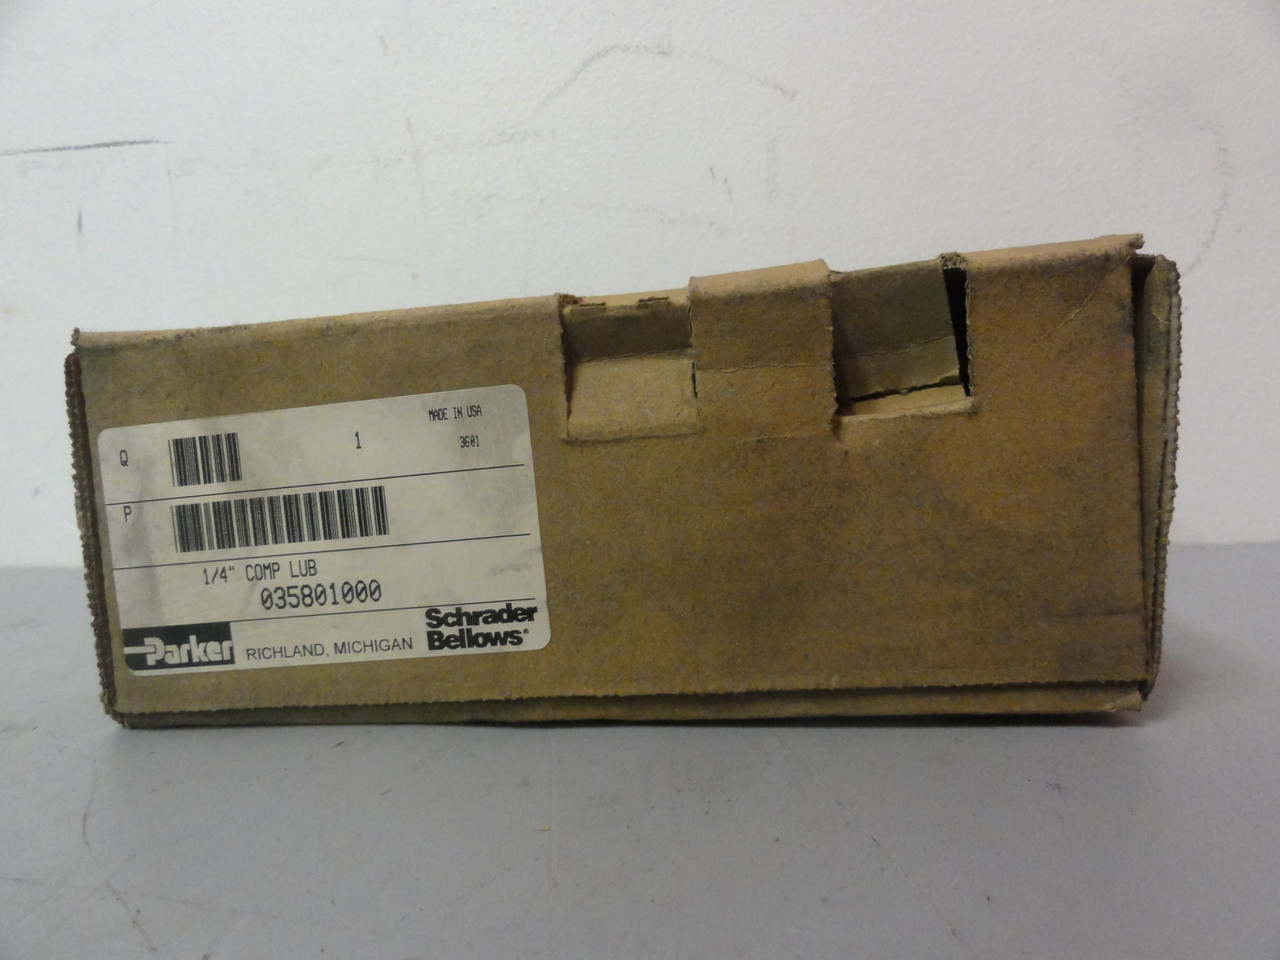 Parker Schrader Bellows 035801000 Lubricator- New (Open Box)